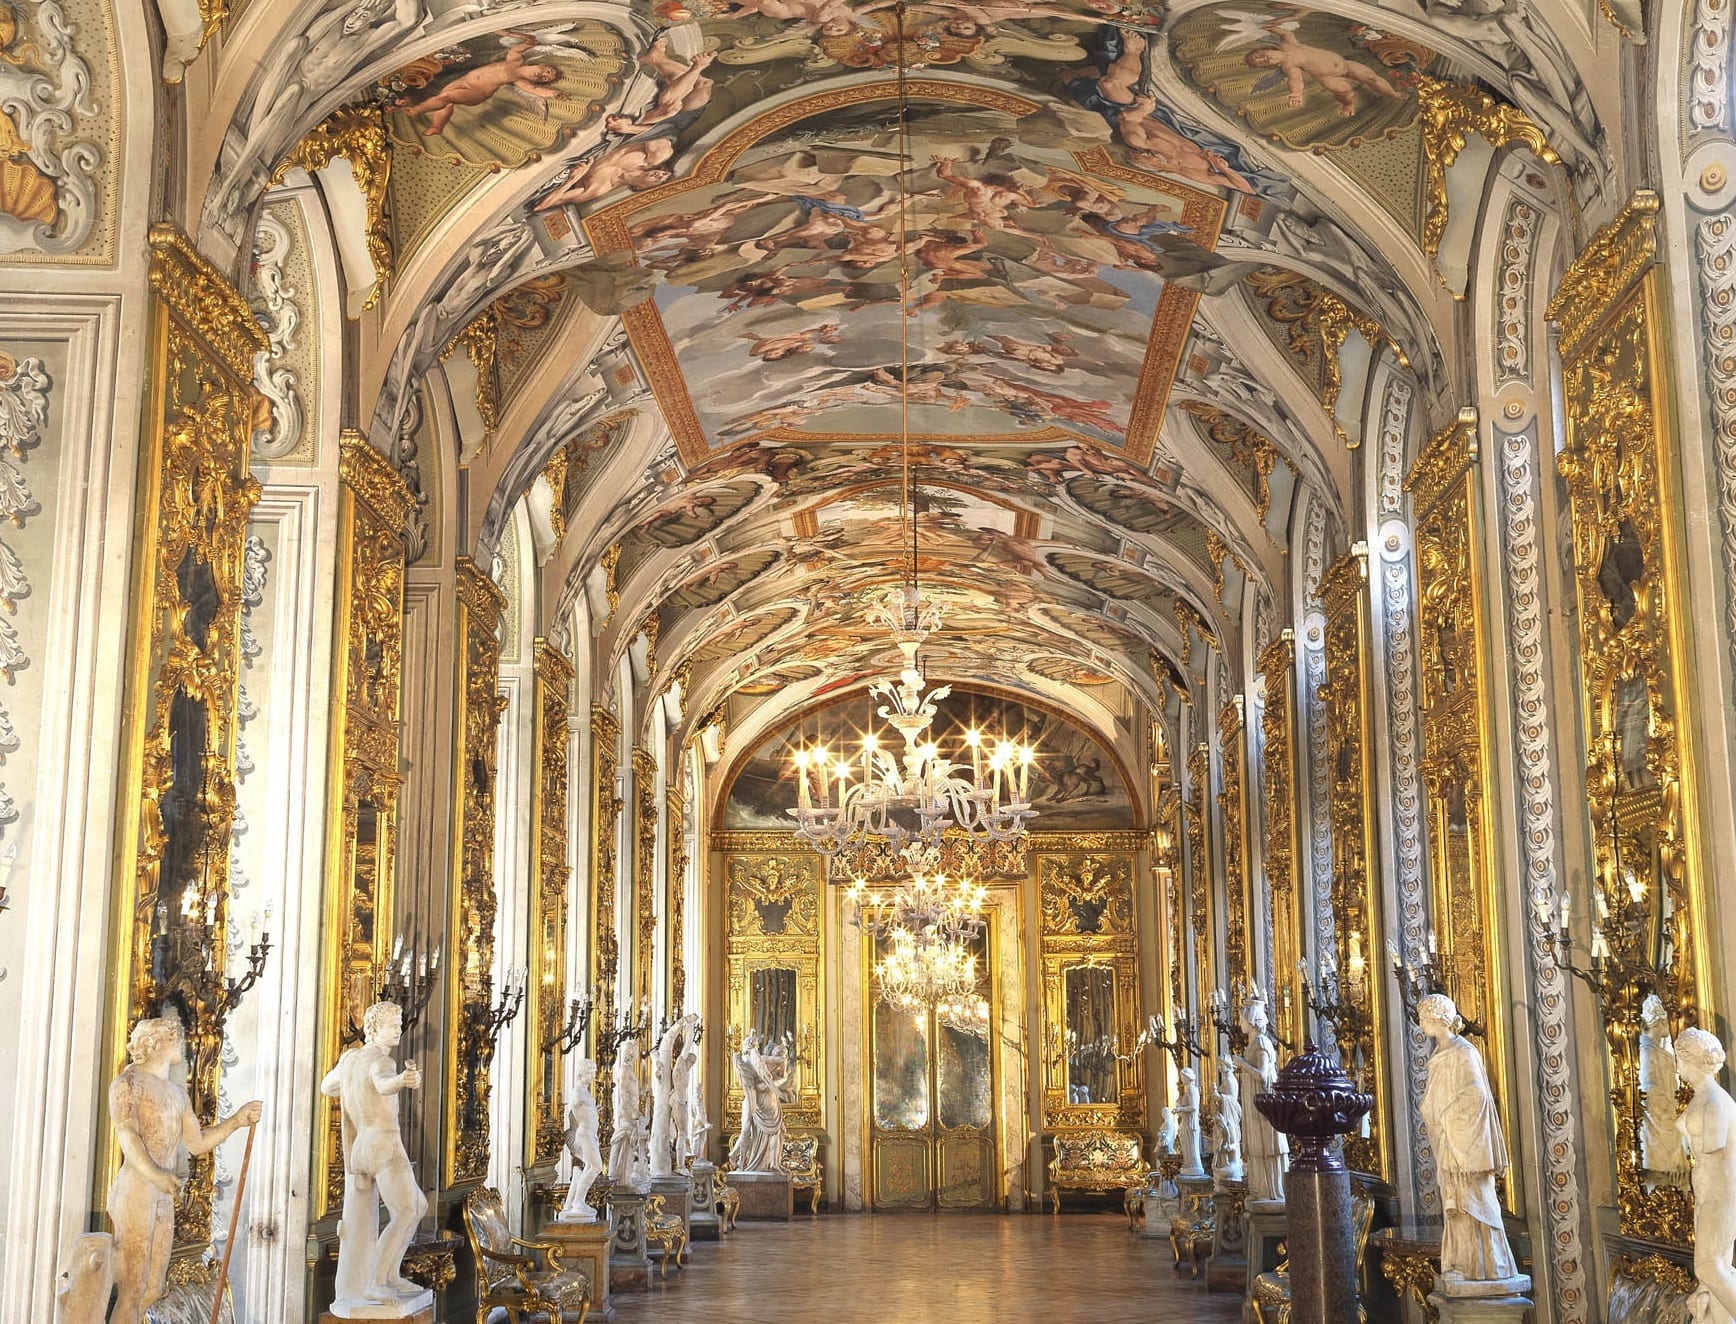 Apertura straordinaria delle dimore storiche del Lazio: quattro giornate di visite gratuite, eventi e percorsi enogastronomici